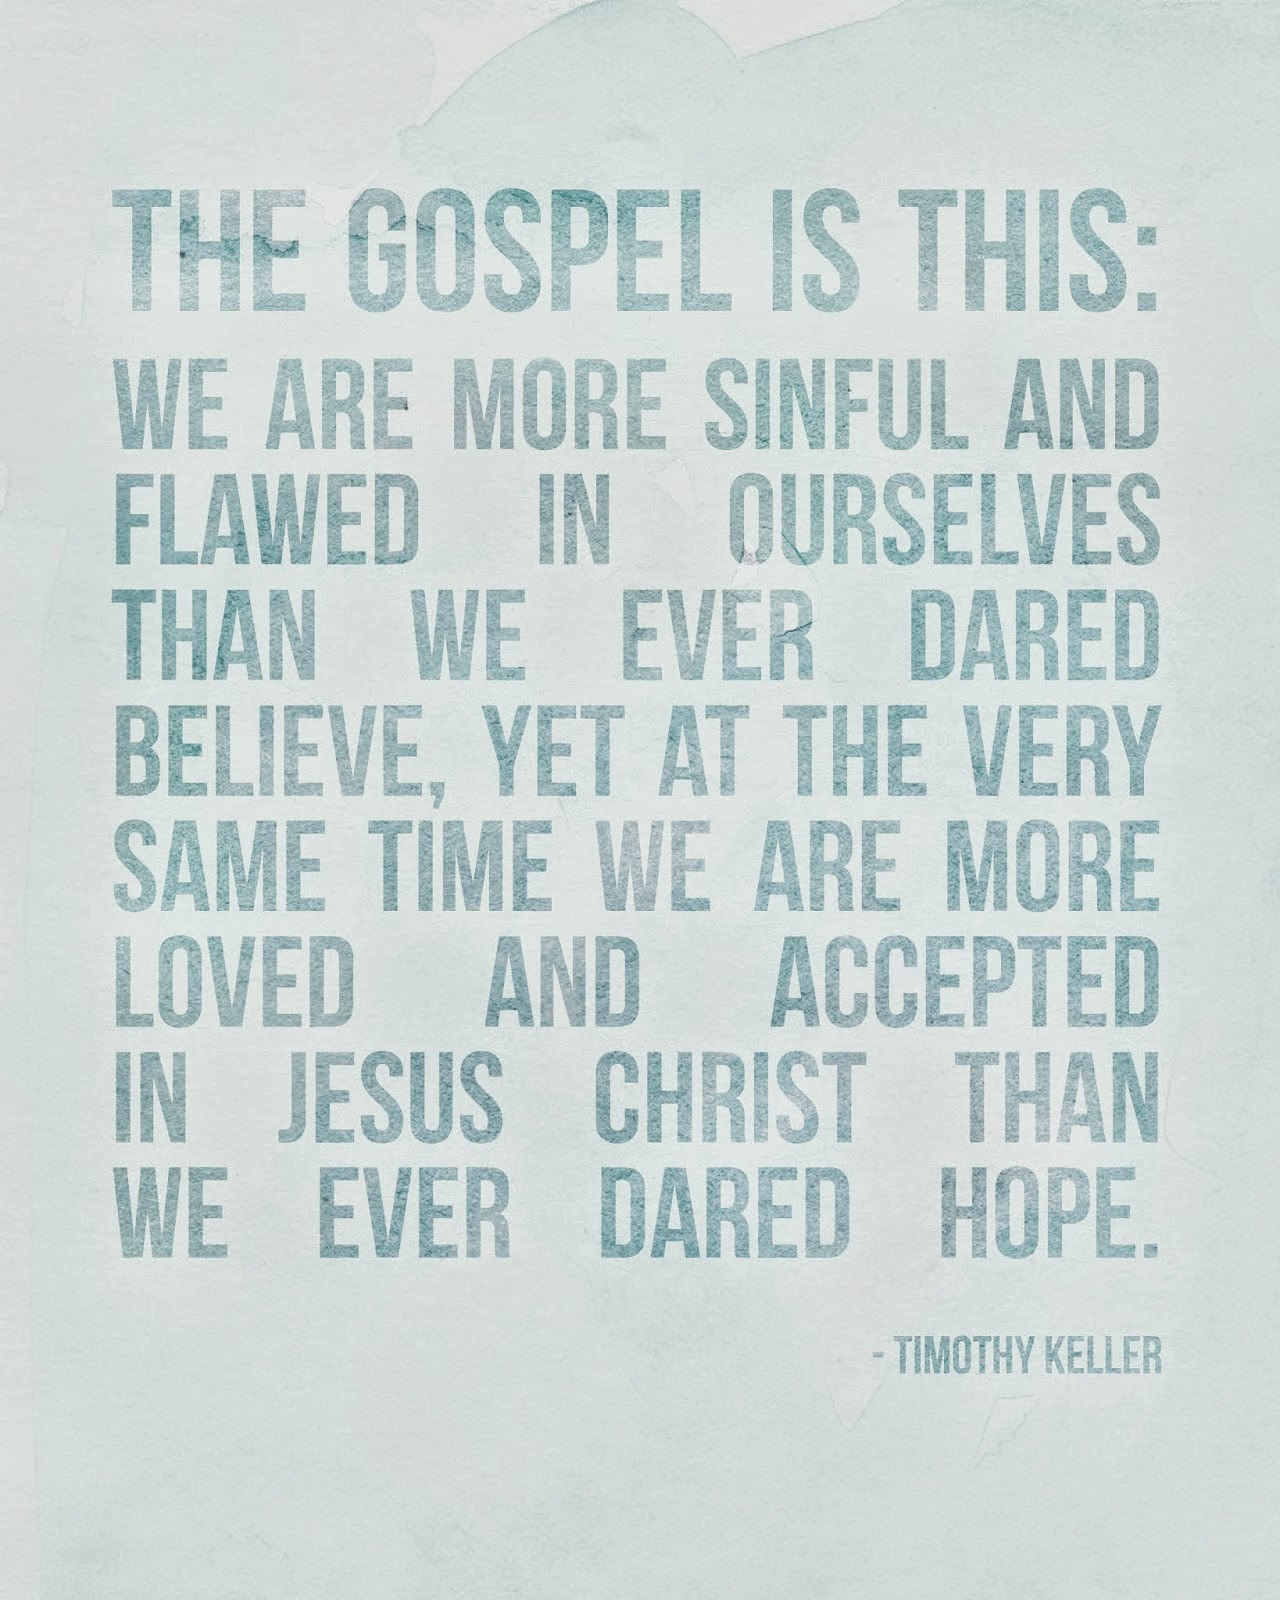 The Gospel is...